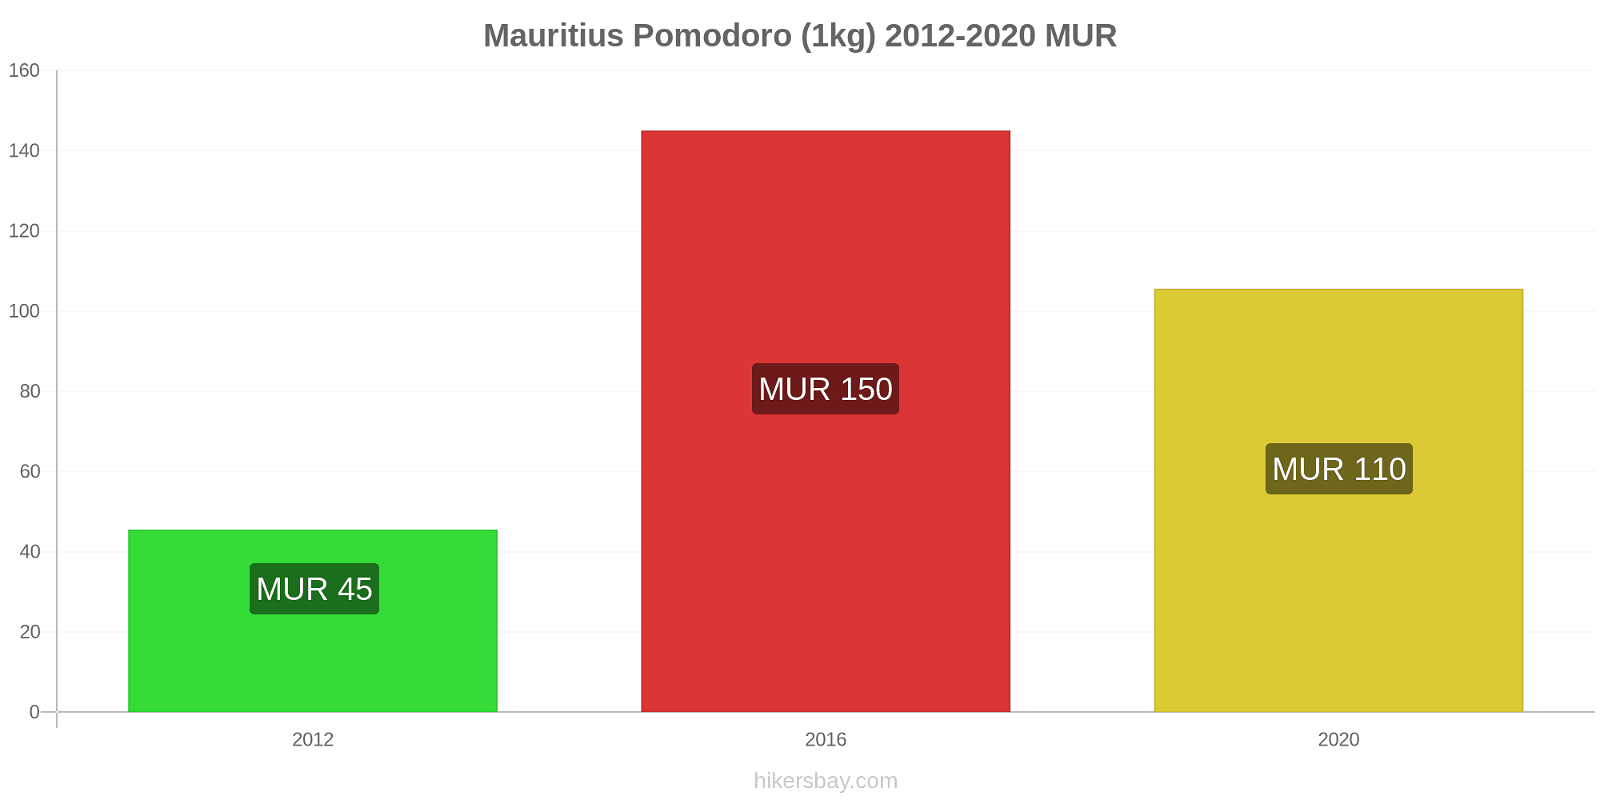 Mauritius variazioni di prezzo Pomodoro (1kg) hikersbay.com